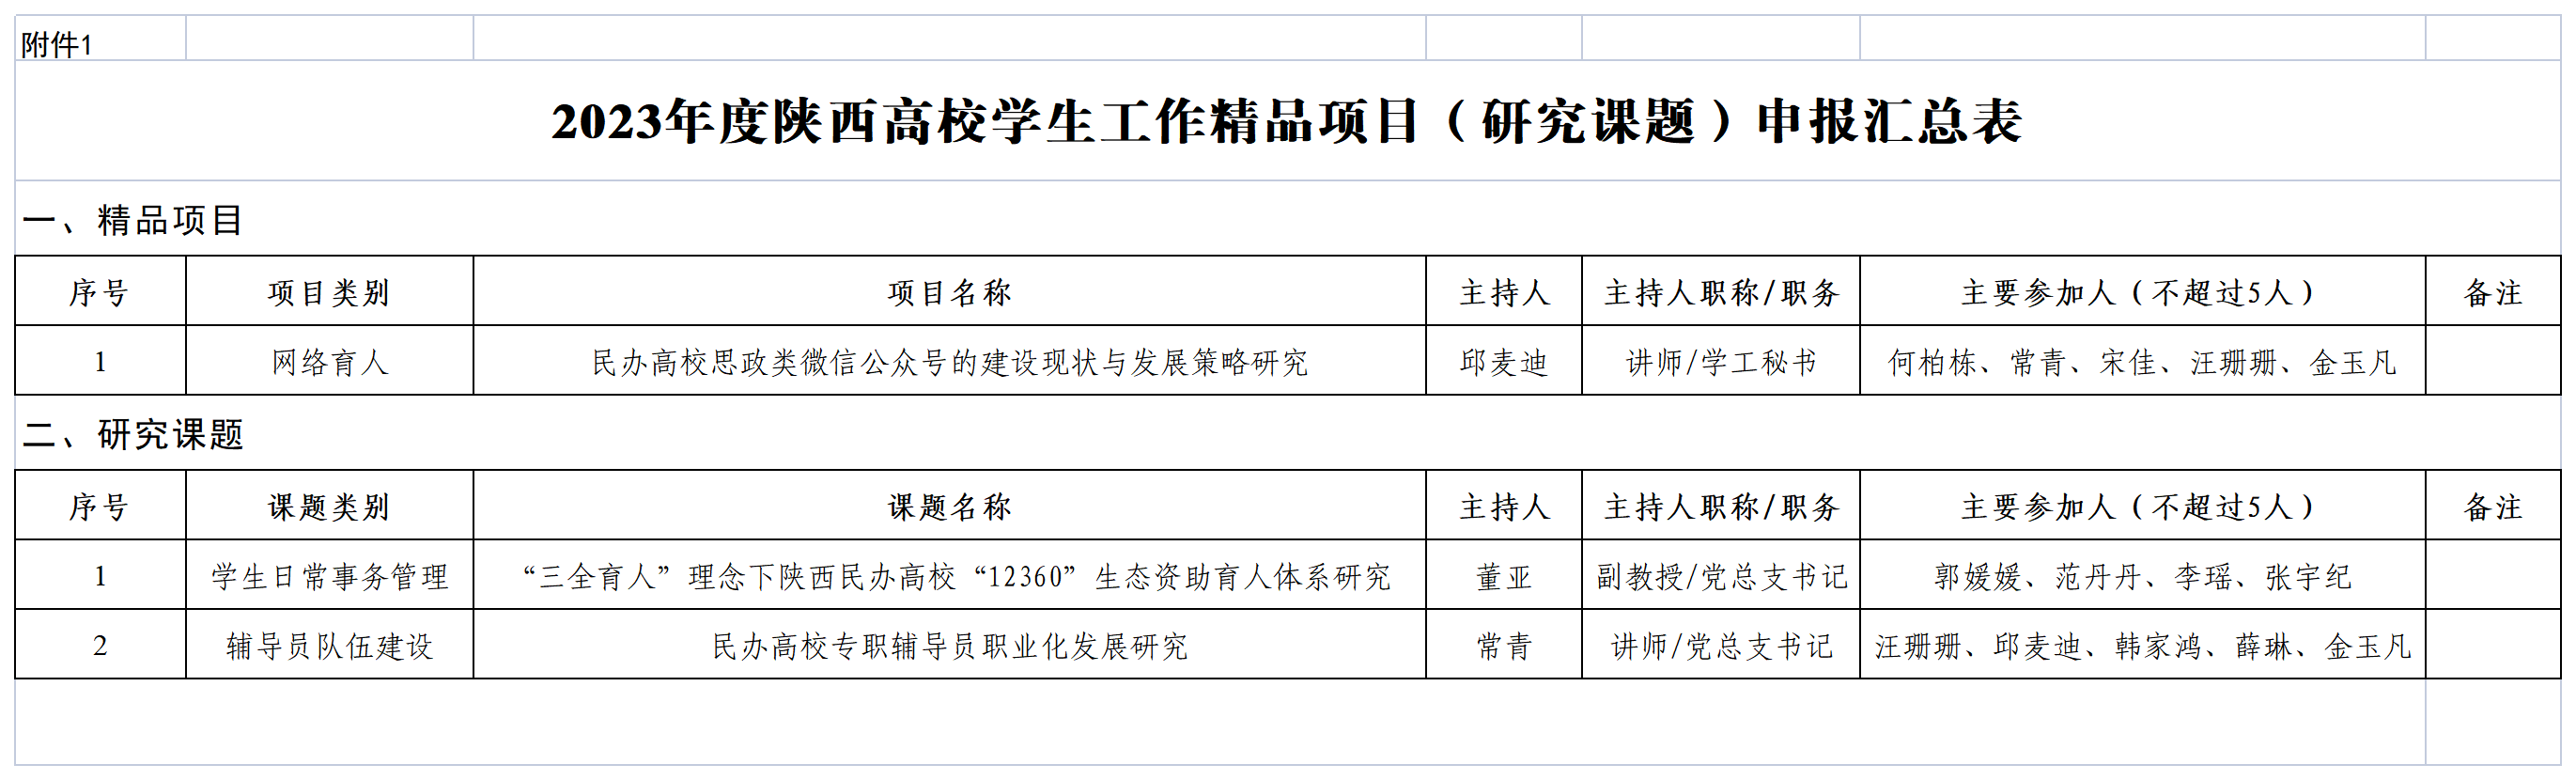 最新附件1：陕西高校2023年学生工作精品项目（研究课题）申报汇总表_Sheet1.png